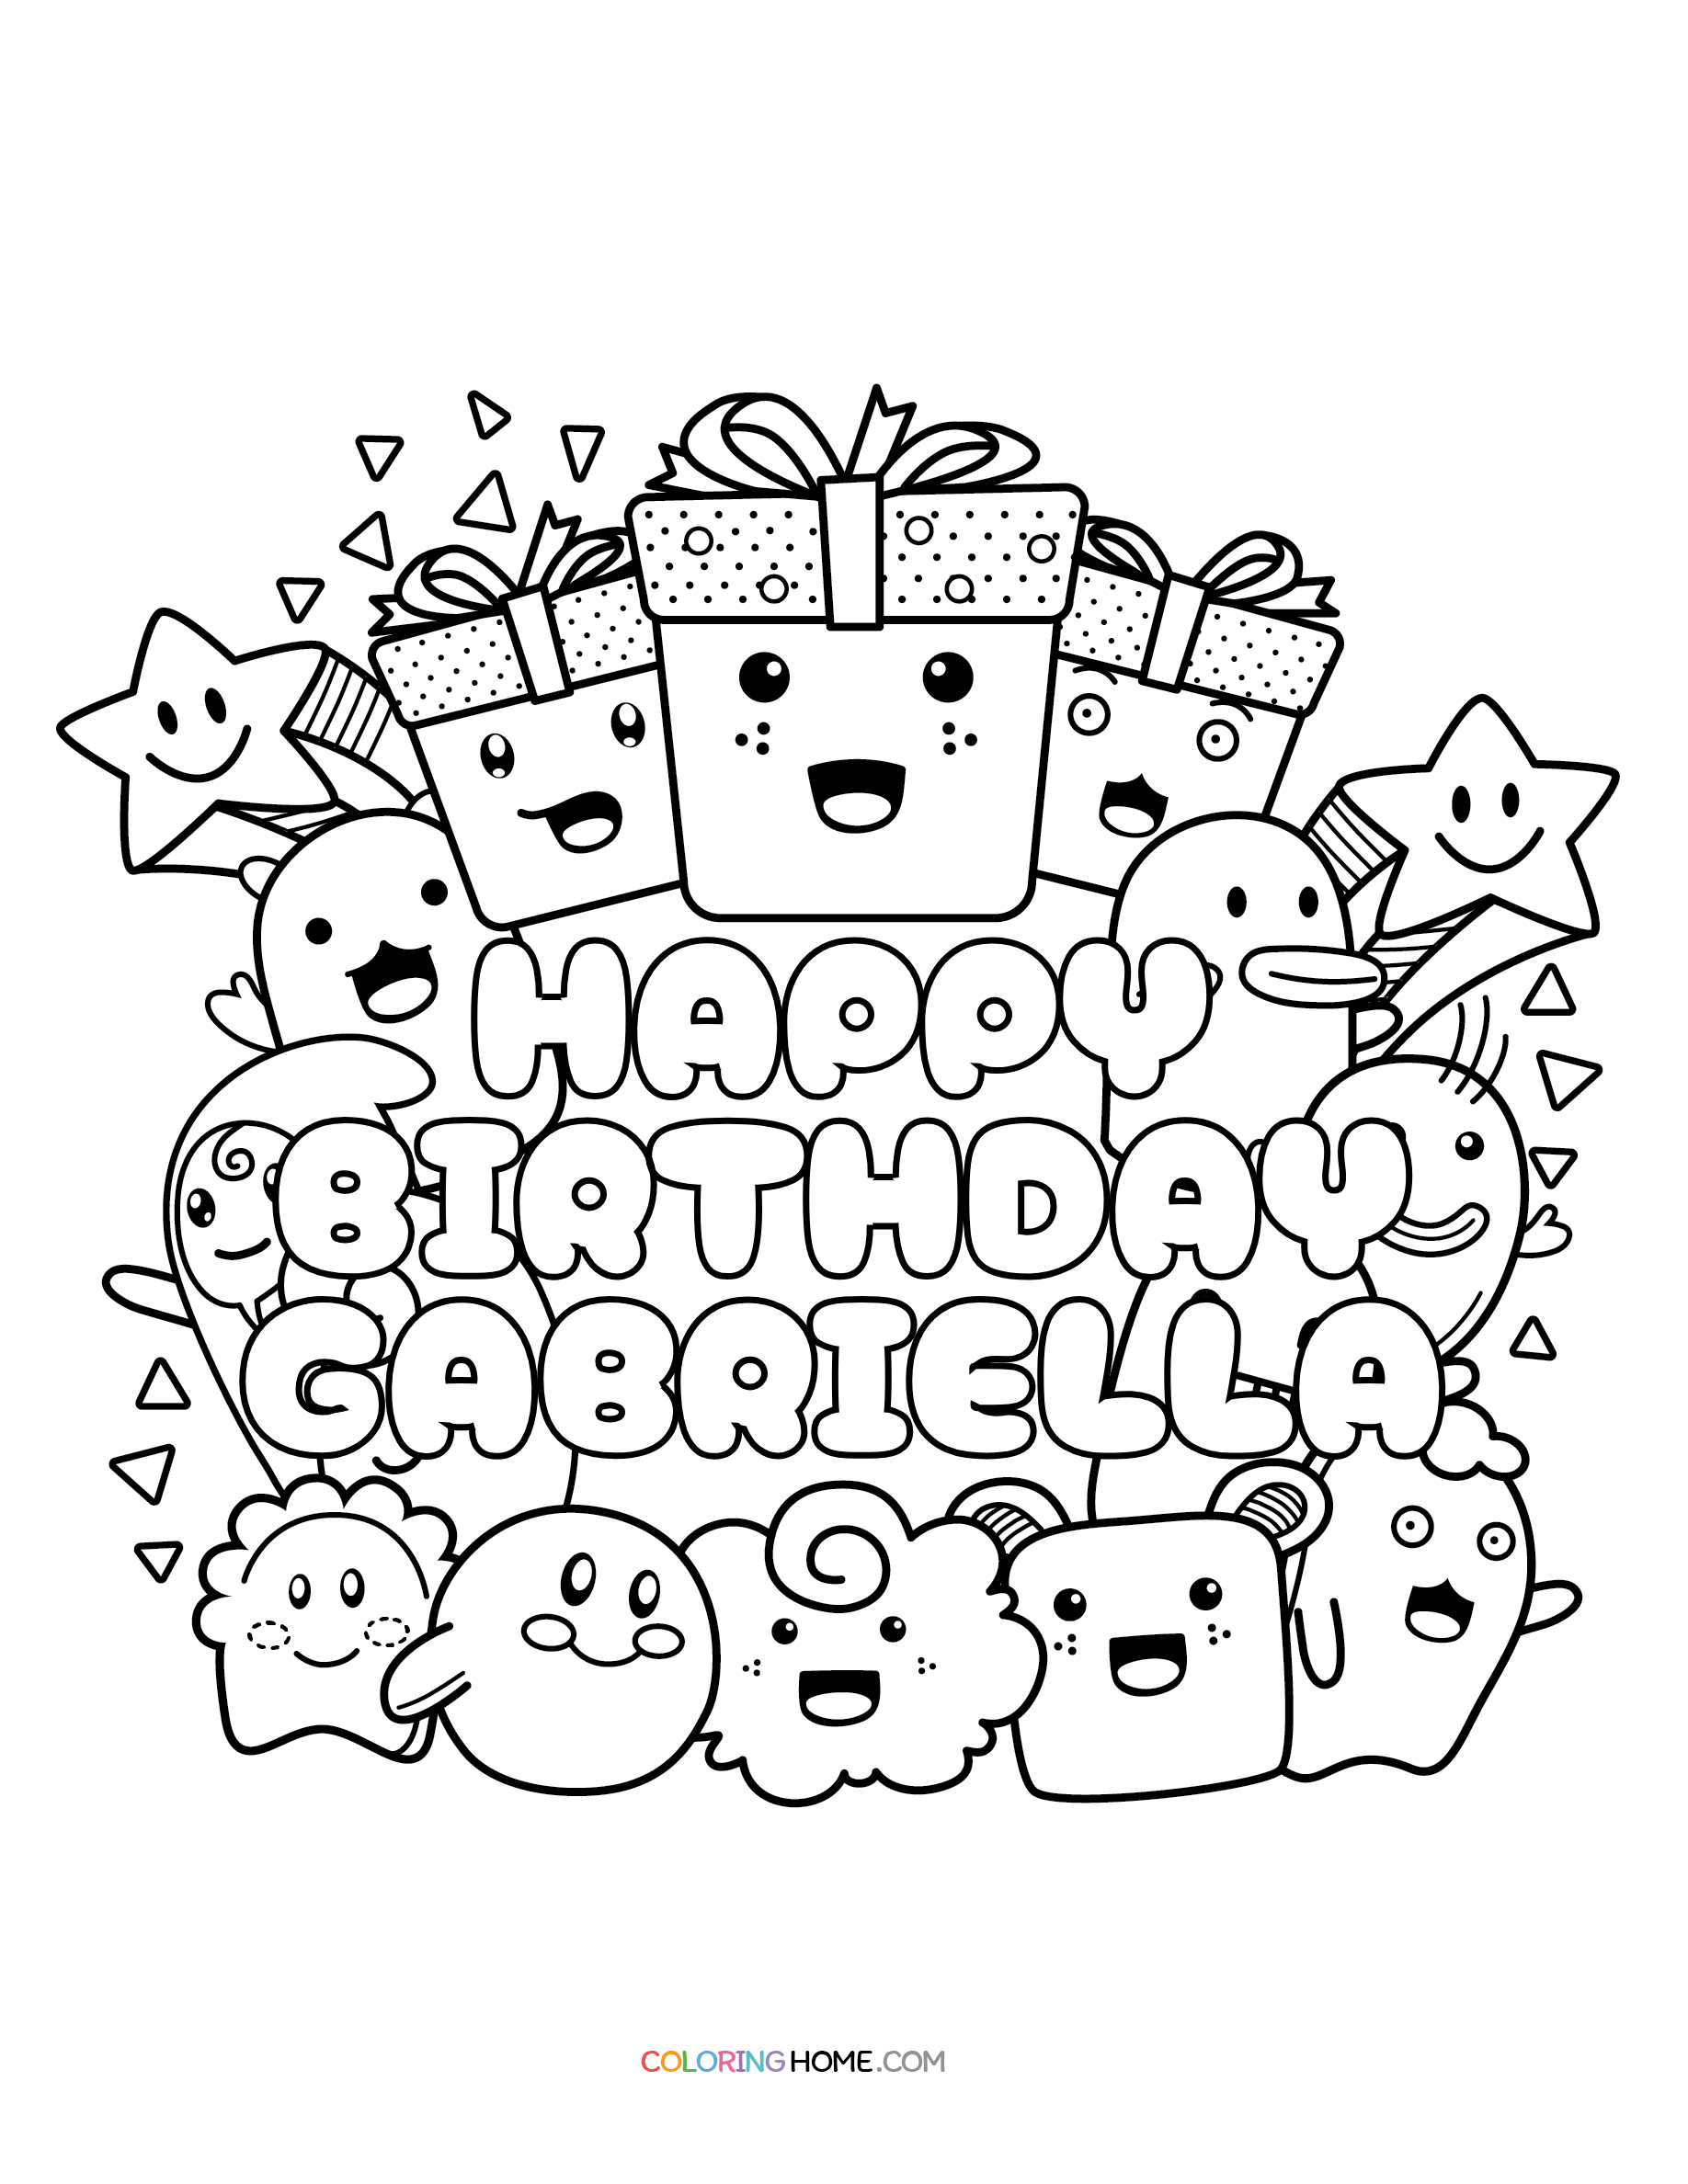 Happy Birthday Gabriella coloring page